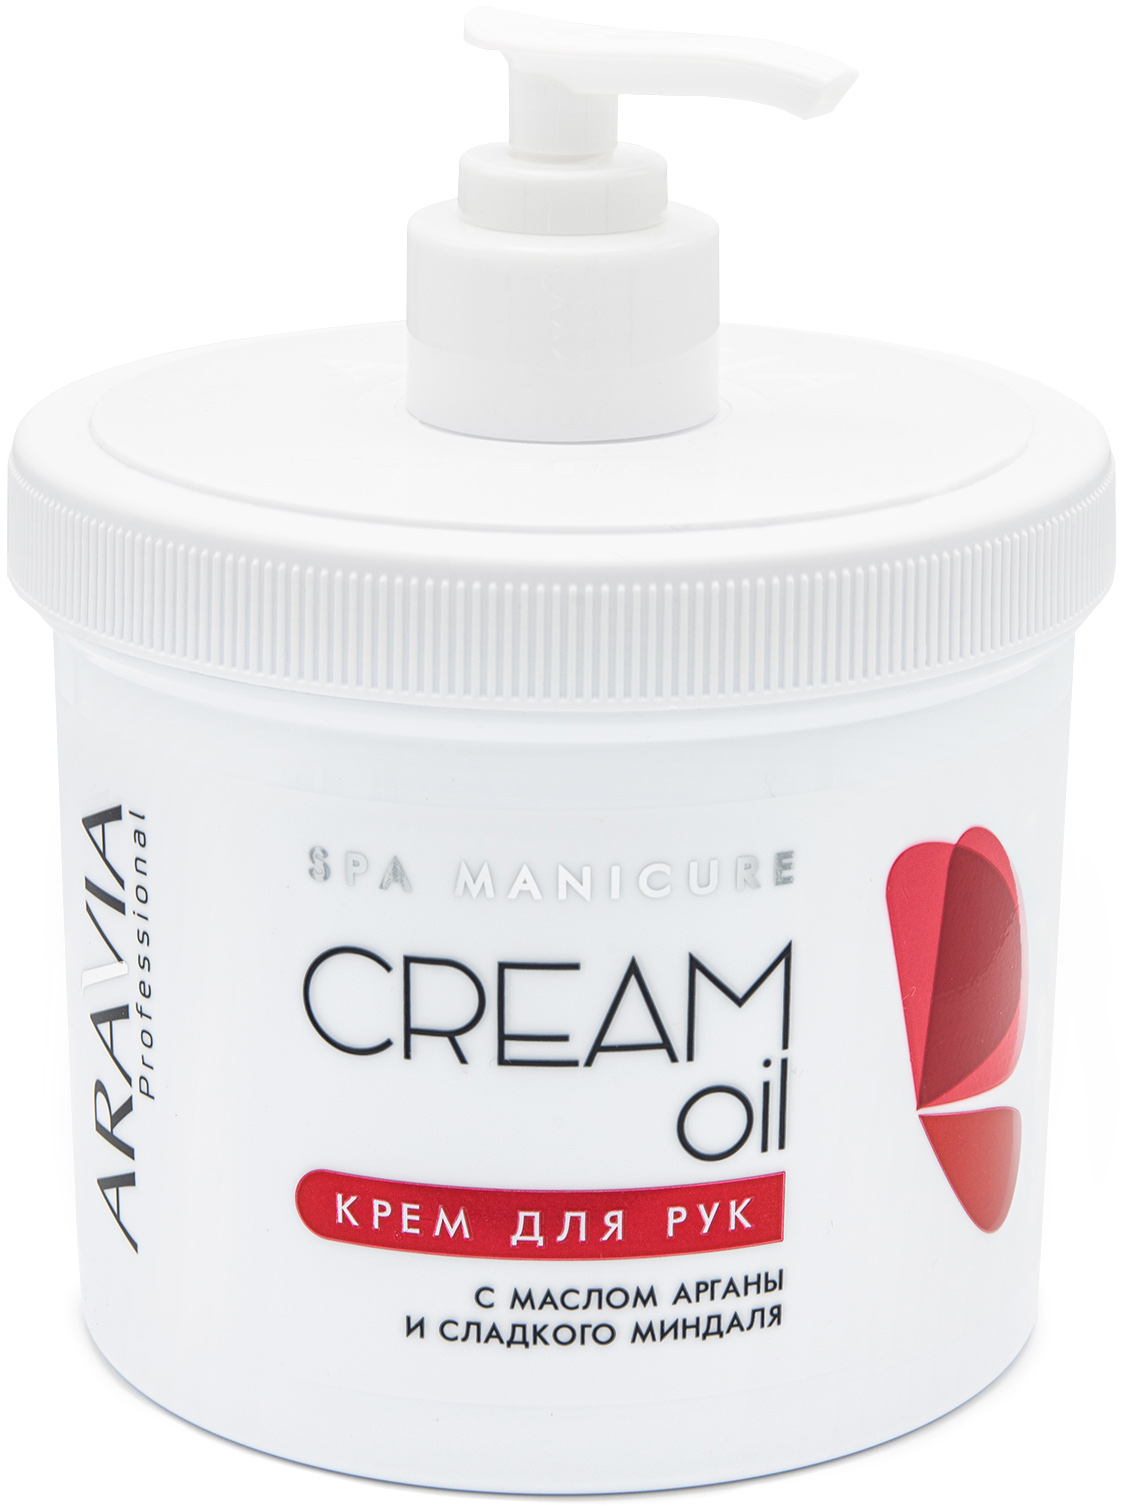 Купить Aravia Professional Крем для рук Cream Oil с маслом арганы и сладкого миндаля, 550 мл (Aravia Professional, SPA маникюр), Россия